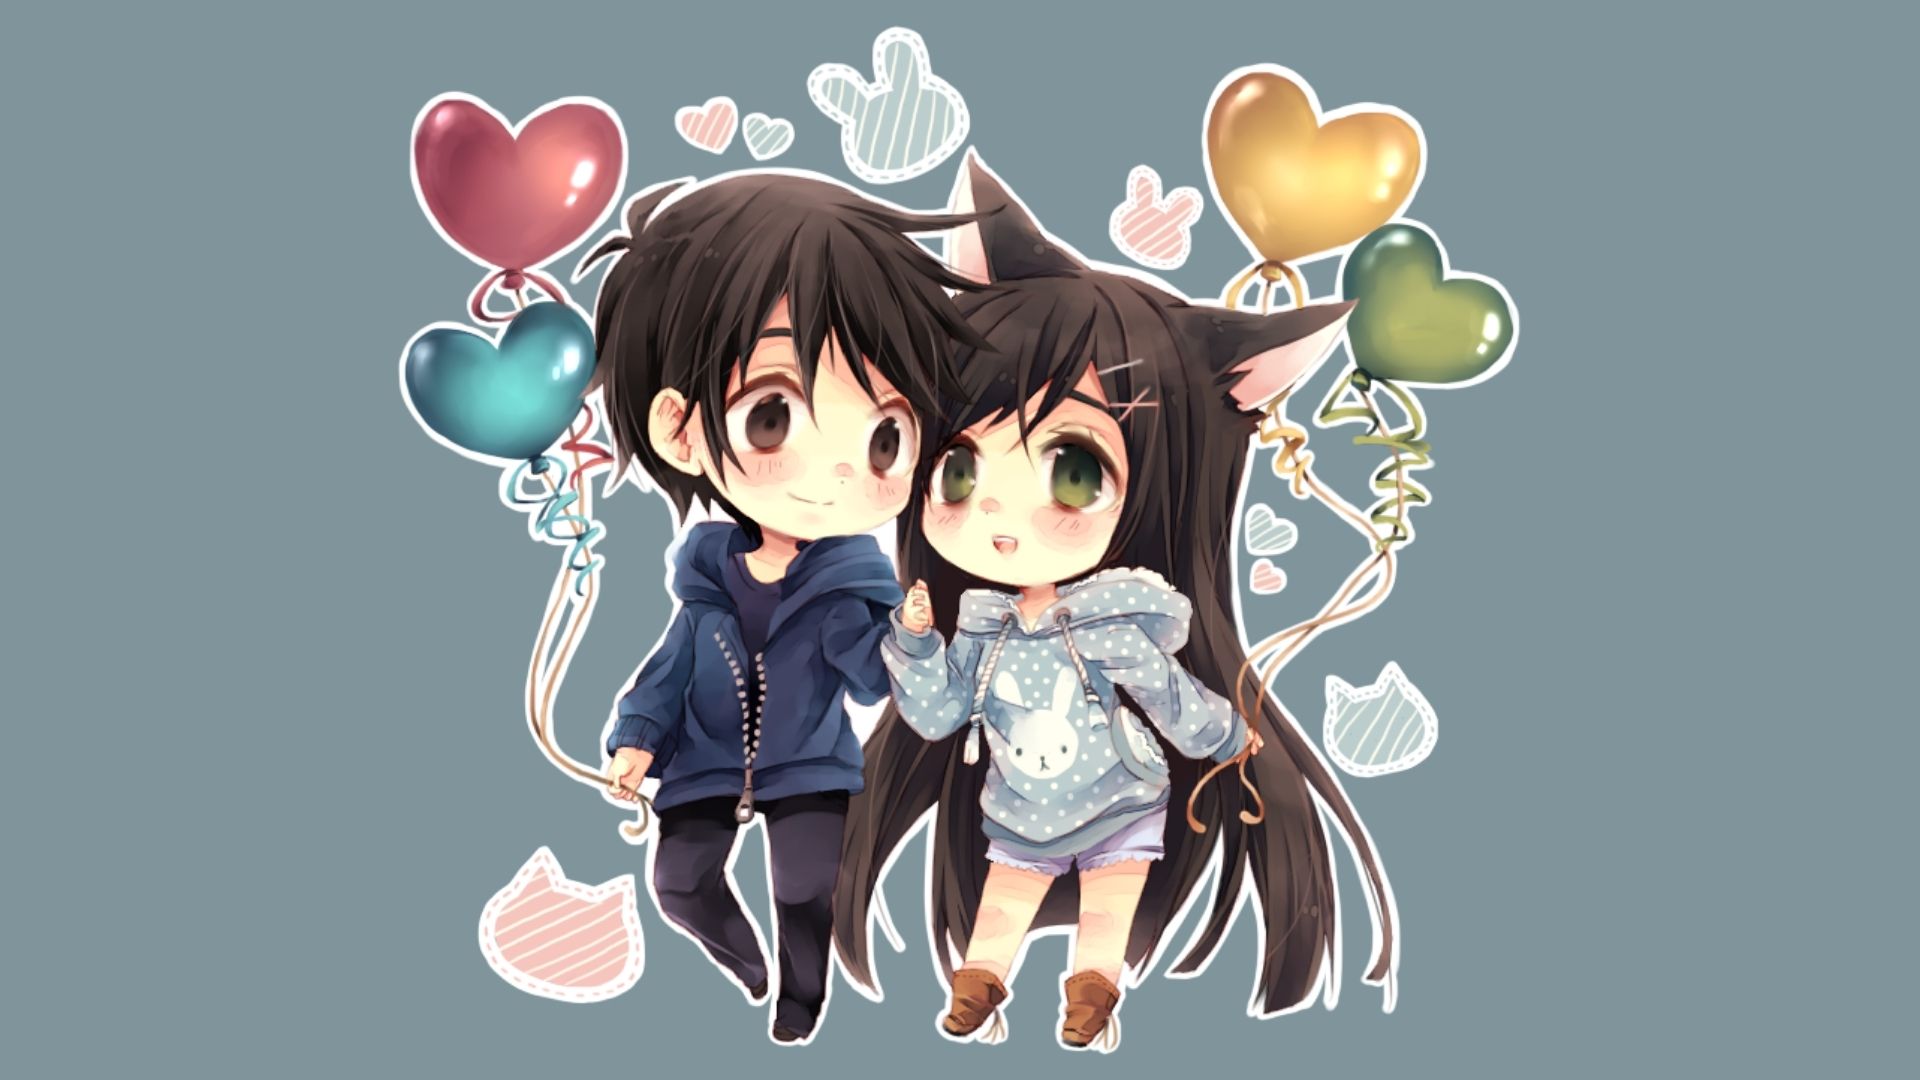 Top những hình cặp đôi dễ thương nhất chibi hoạt hình anime  VFOVN